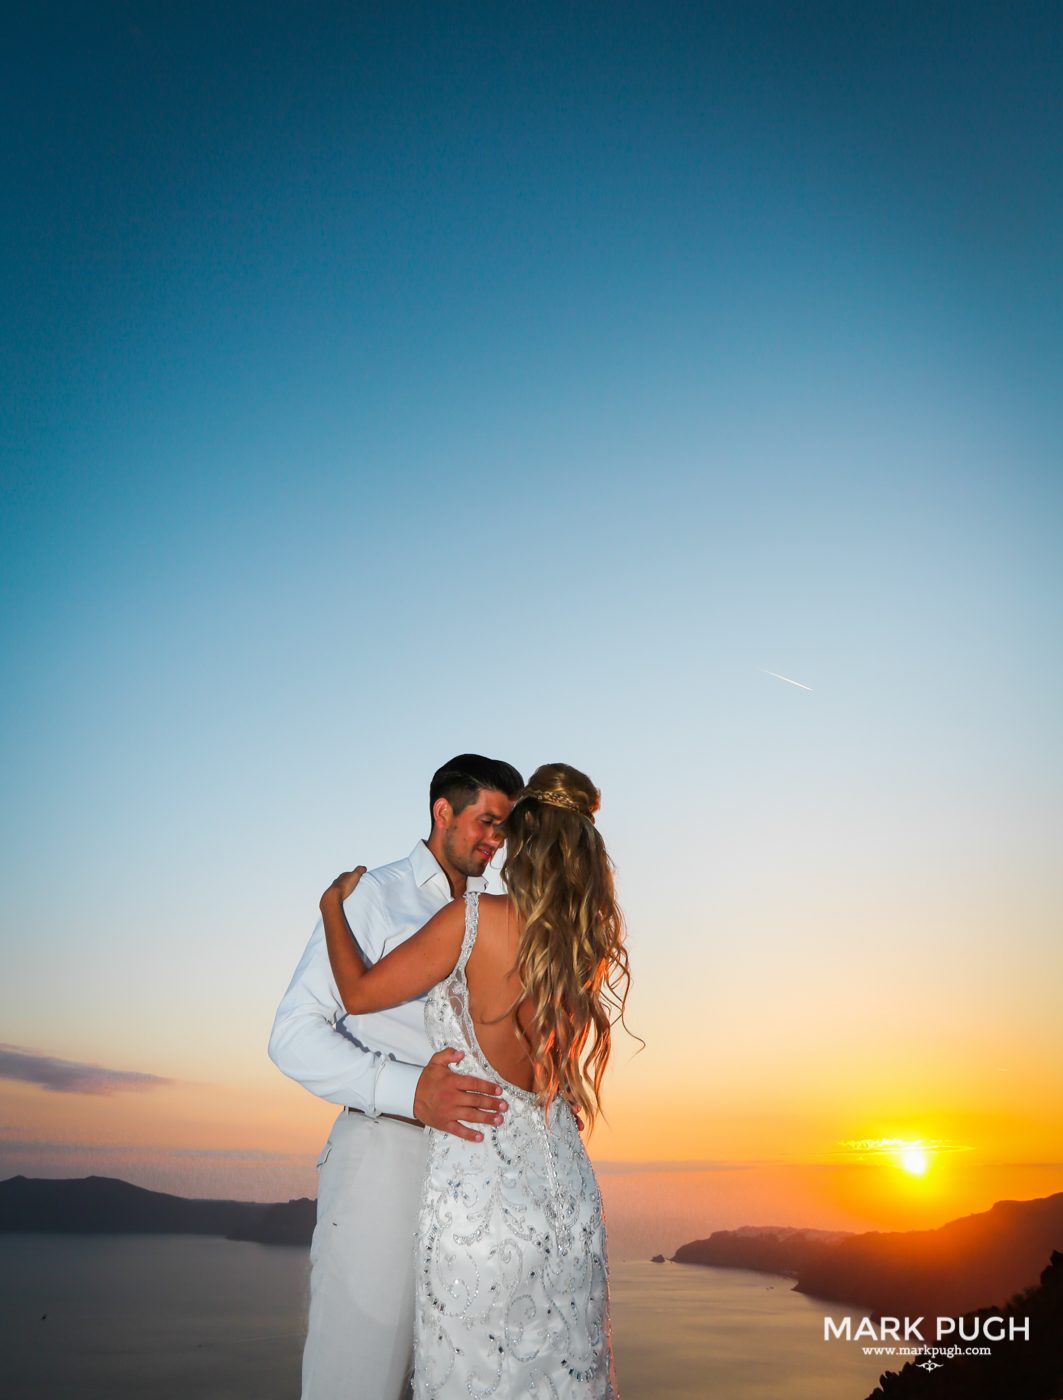 083 - Kerry and Lee - Destination Wedding in Santorini by www.markpugh.com -0978.JPG